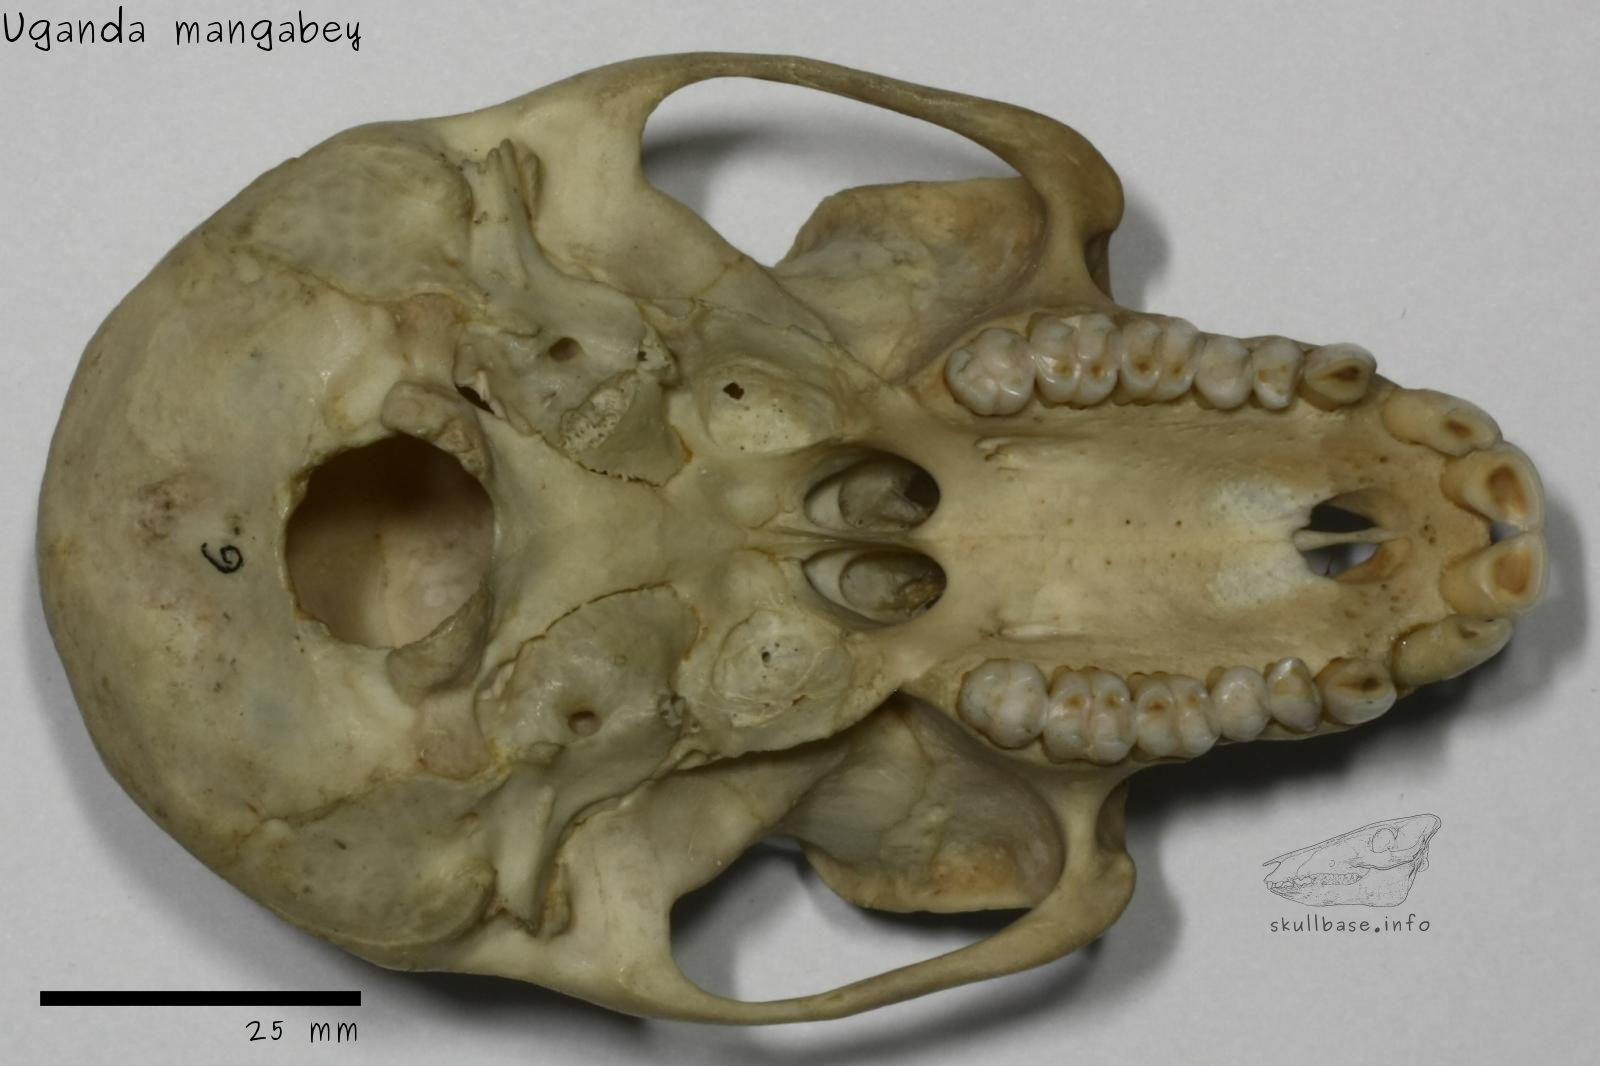 Uganda mangabey (Lophocebus ugandae) skull ventral view